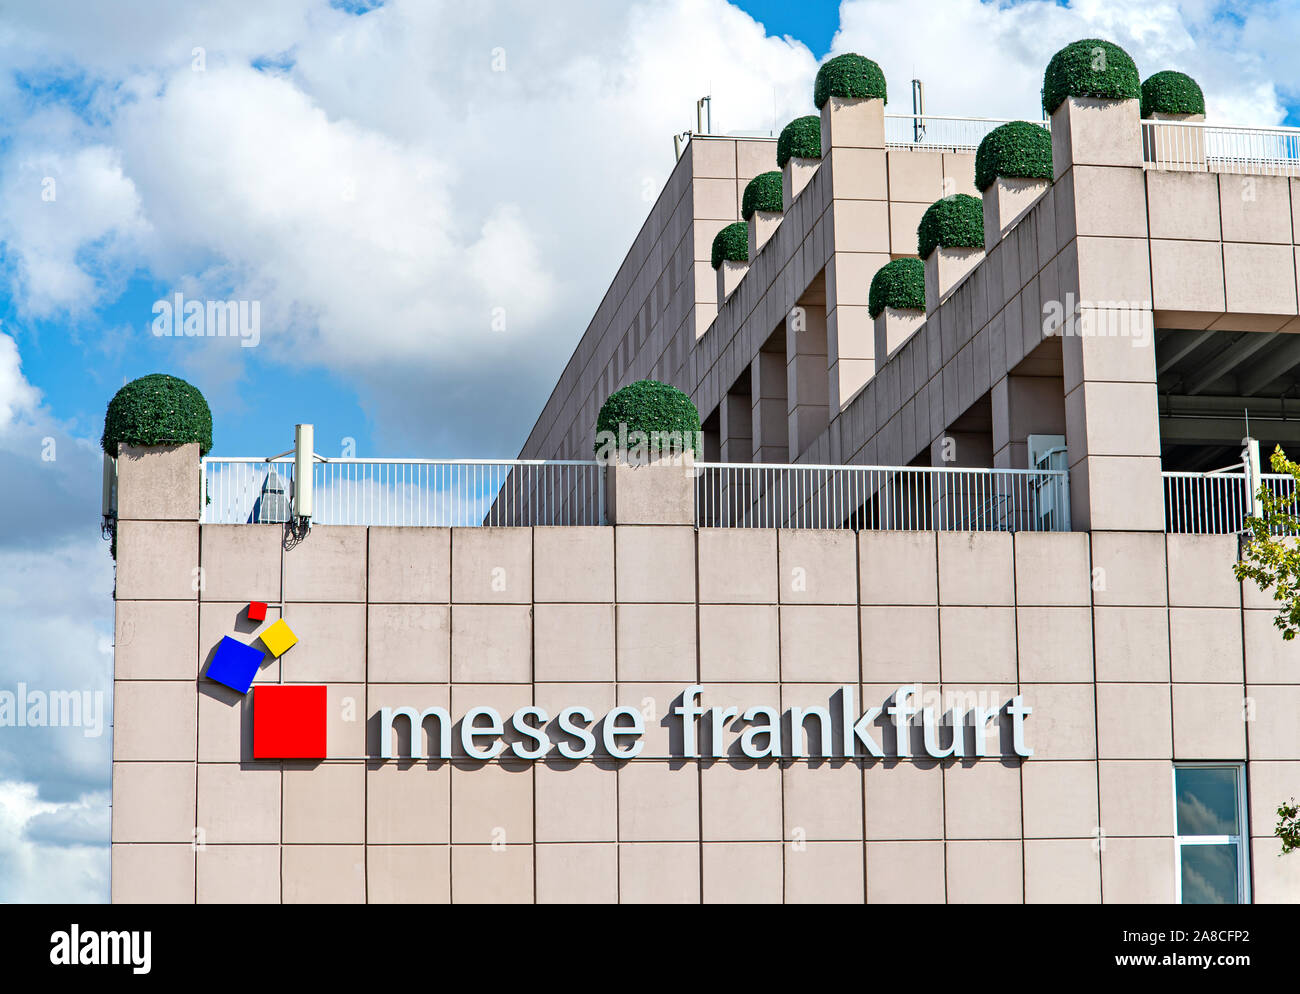 Le logo de Messe Frankfurt sur un bâtiment au centre d'exposition Banque D'Images